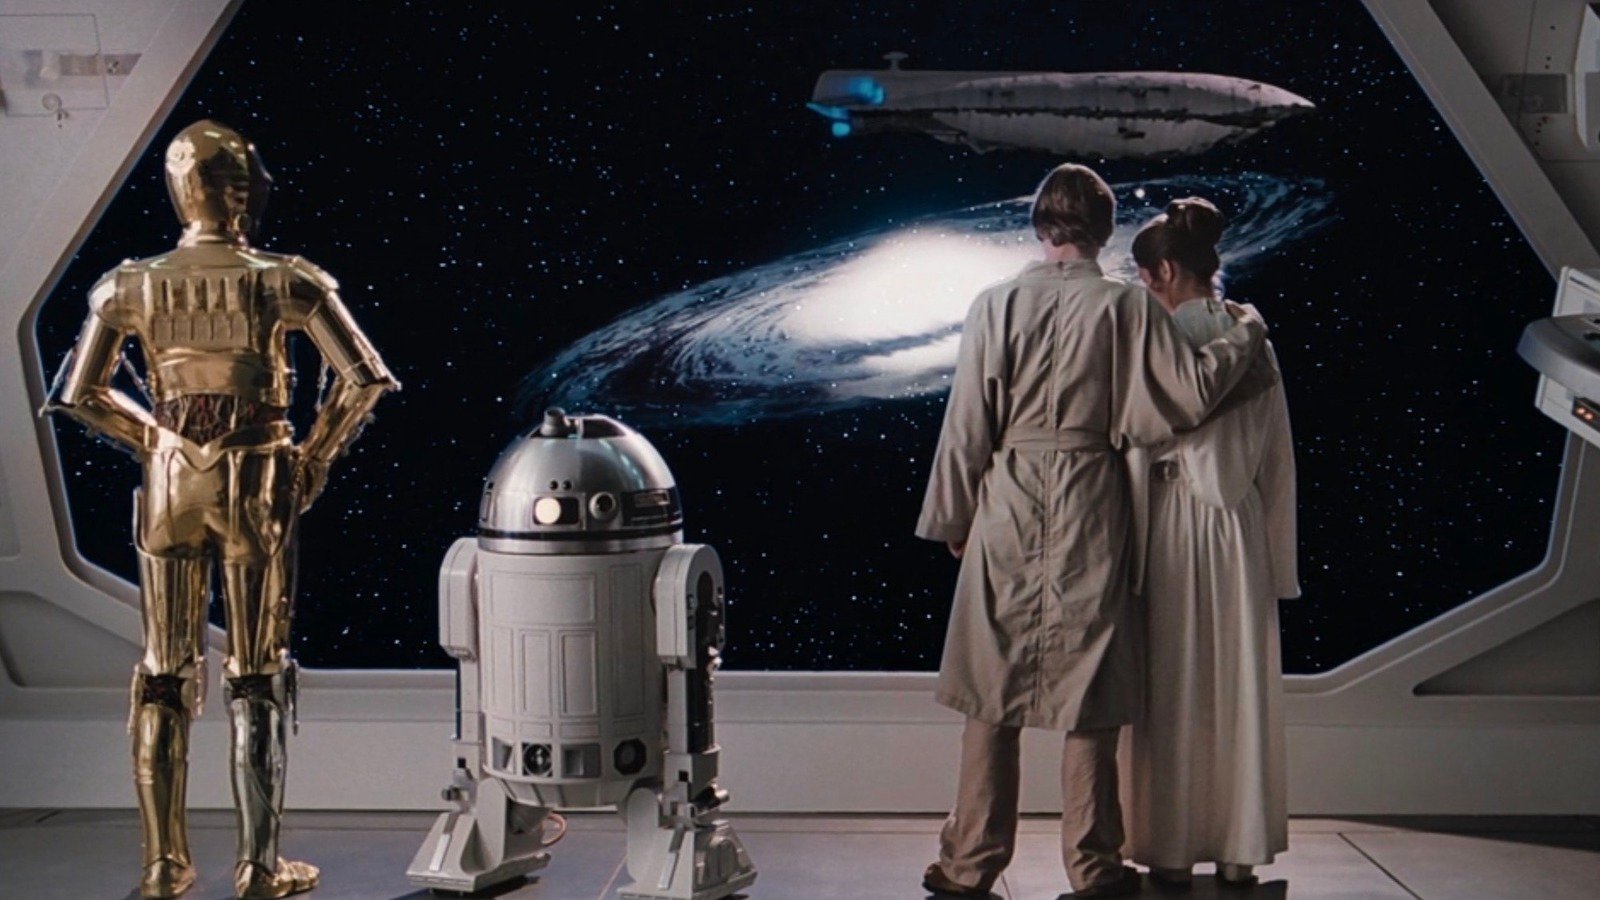 Celebra el Día de Star Wars haciéndote con sus tres trilogías en Blu-ray ahora con descuento en Amazon